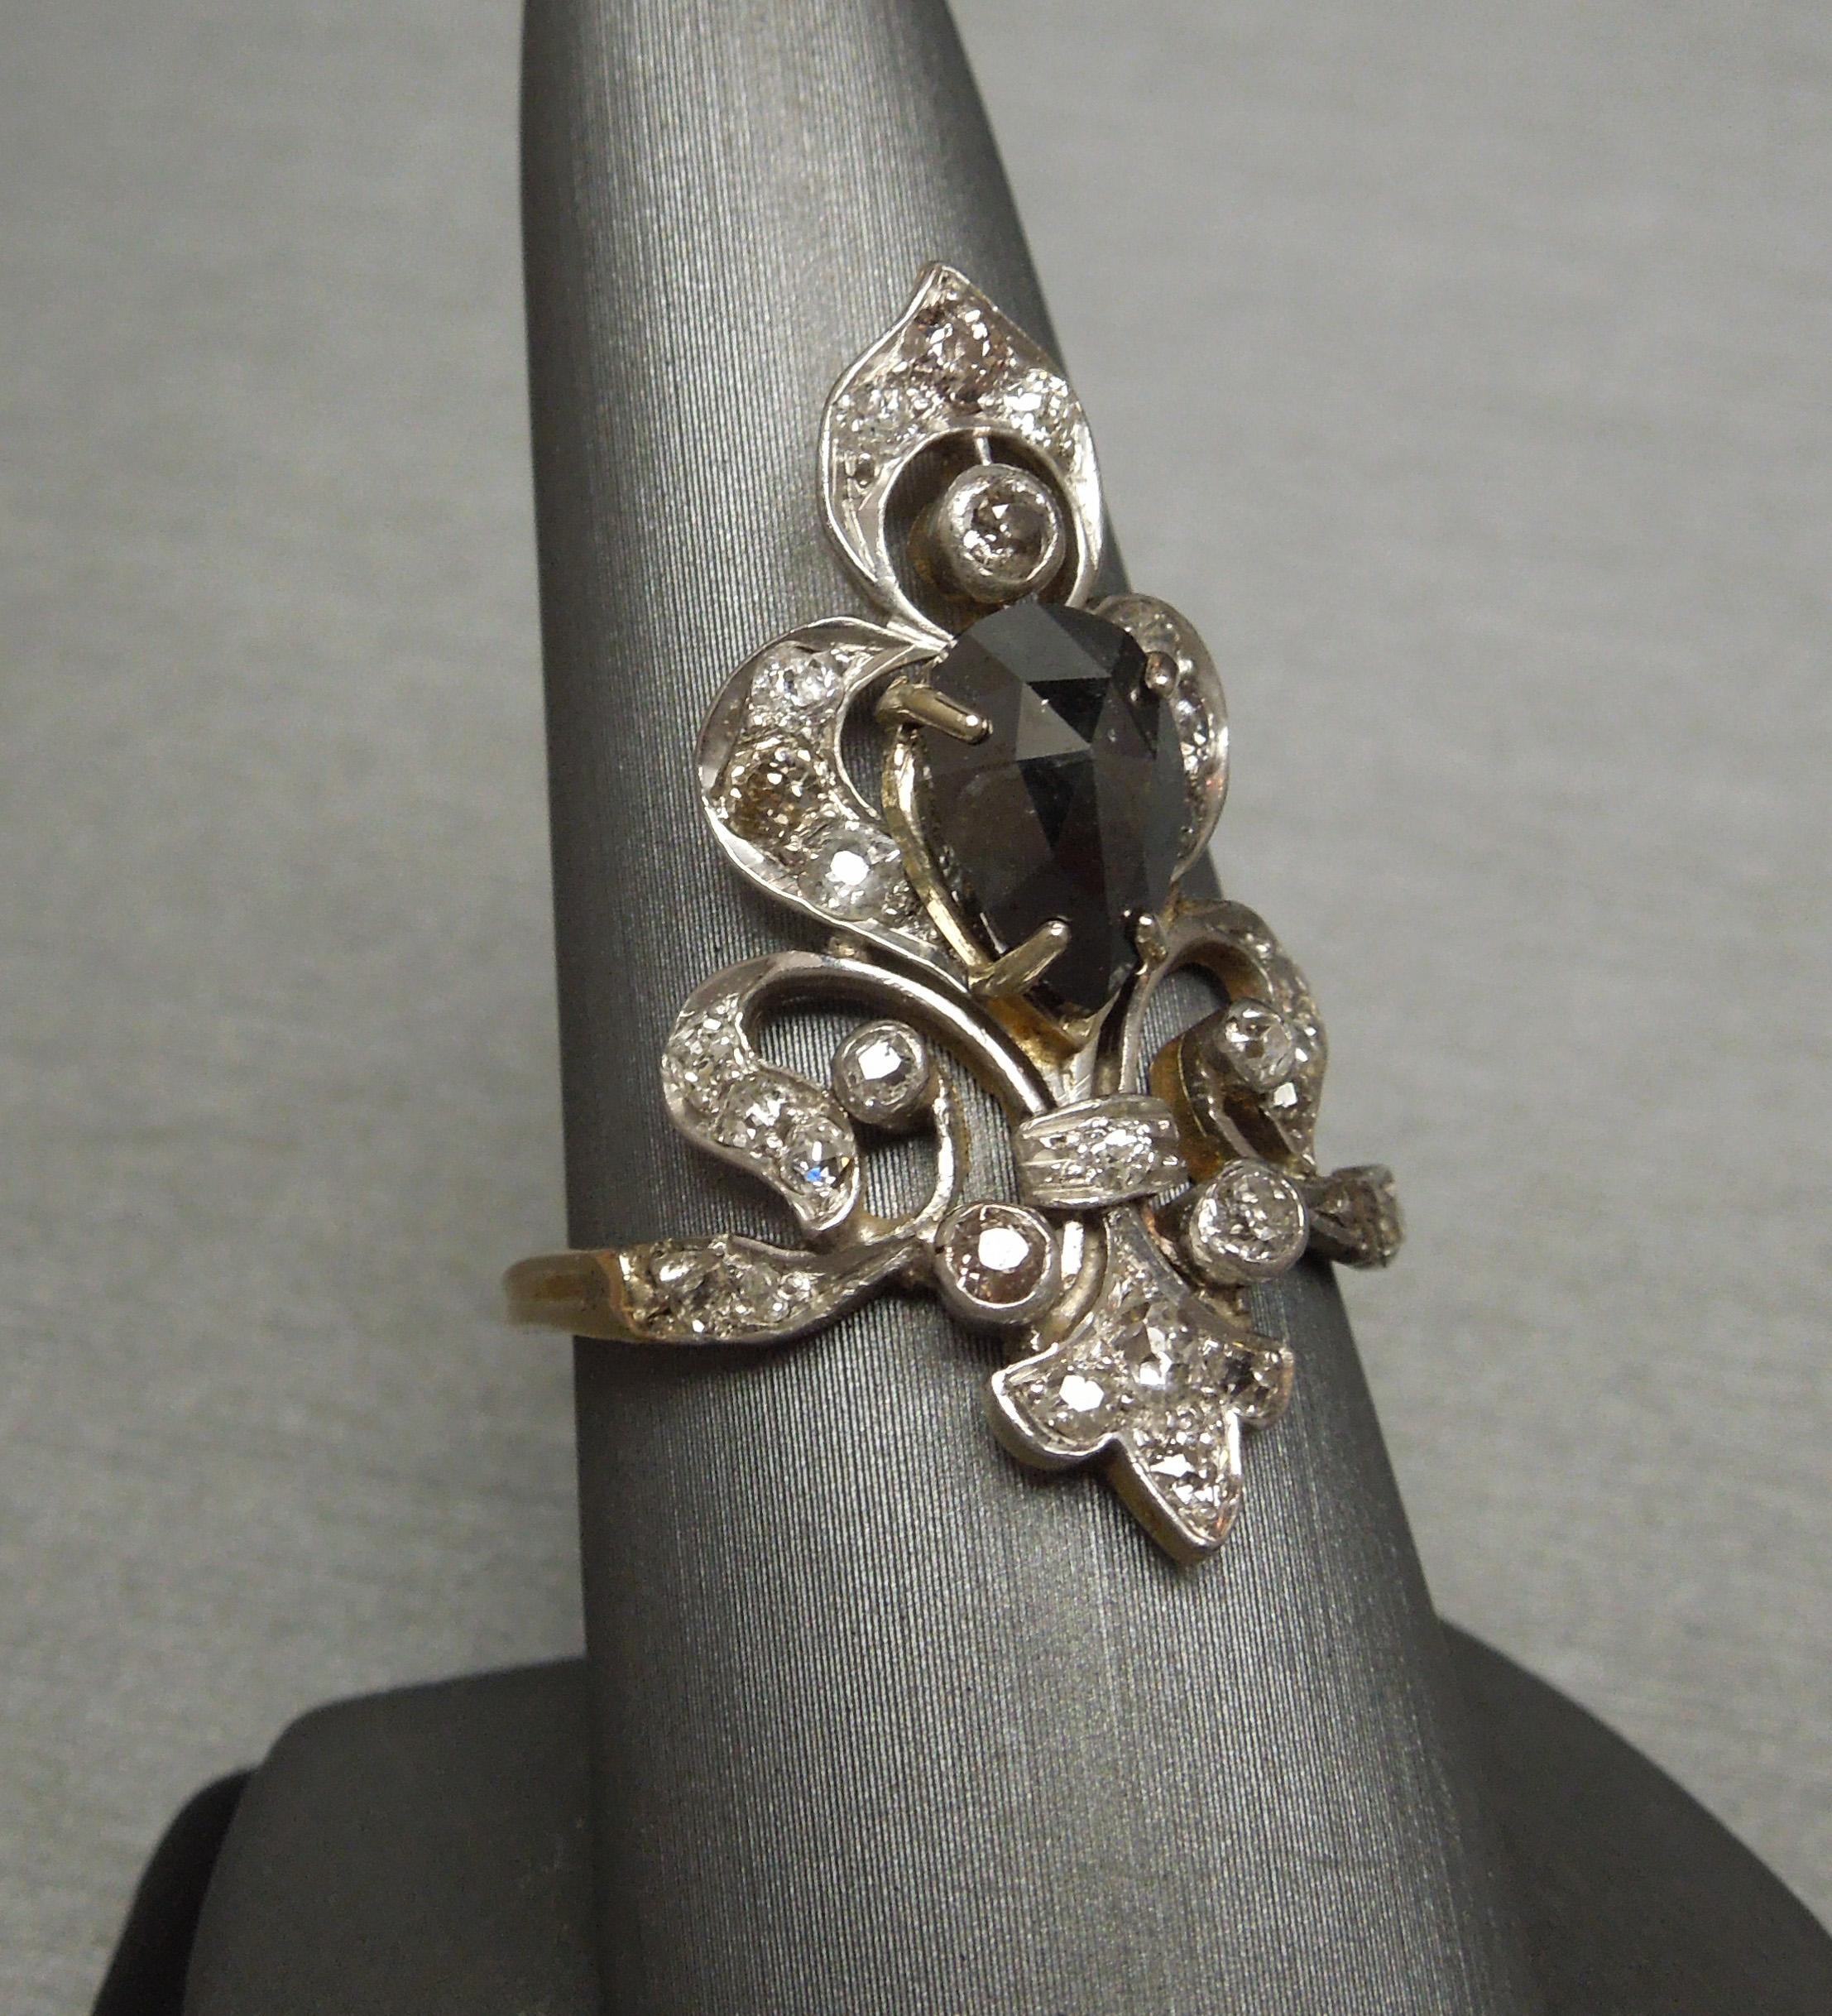 Konstruiert aus einem Sterling Silber oberen Abschnitt & 14KT Gelbgold Basis, diese Zeit Antique New Orleans Fleur de Lis Tiara Stil Ring verfügt über eine zentrale 1,80 Karat Pear geschnitten natürlichen schwarzen Diamanten mit mehreren